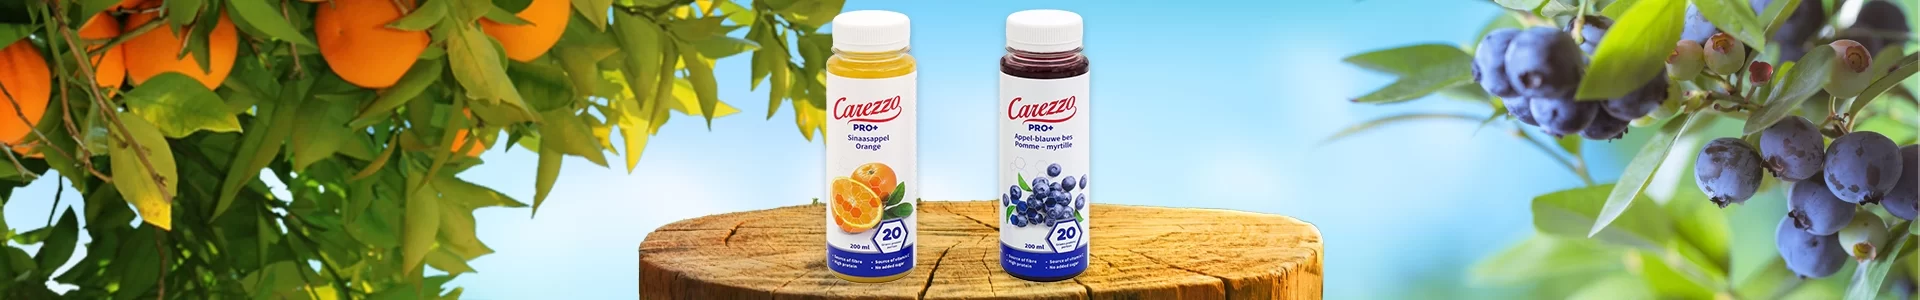 NIEUW: Carezzo Pro+ fruitdrinks met 20 gram eiwit!